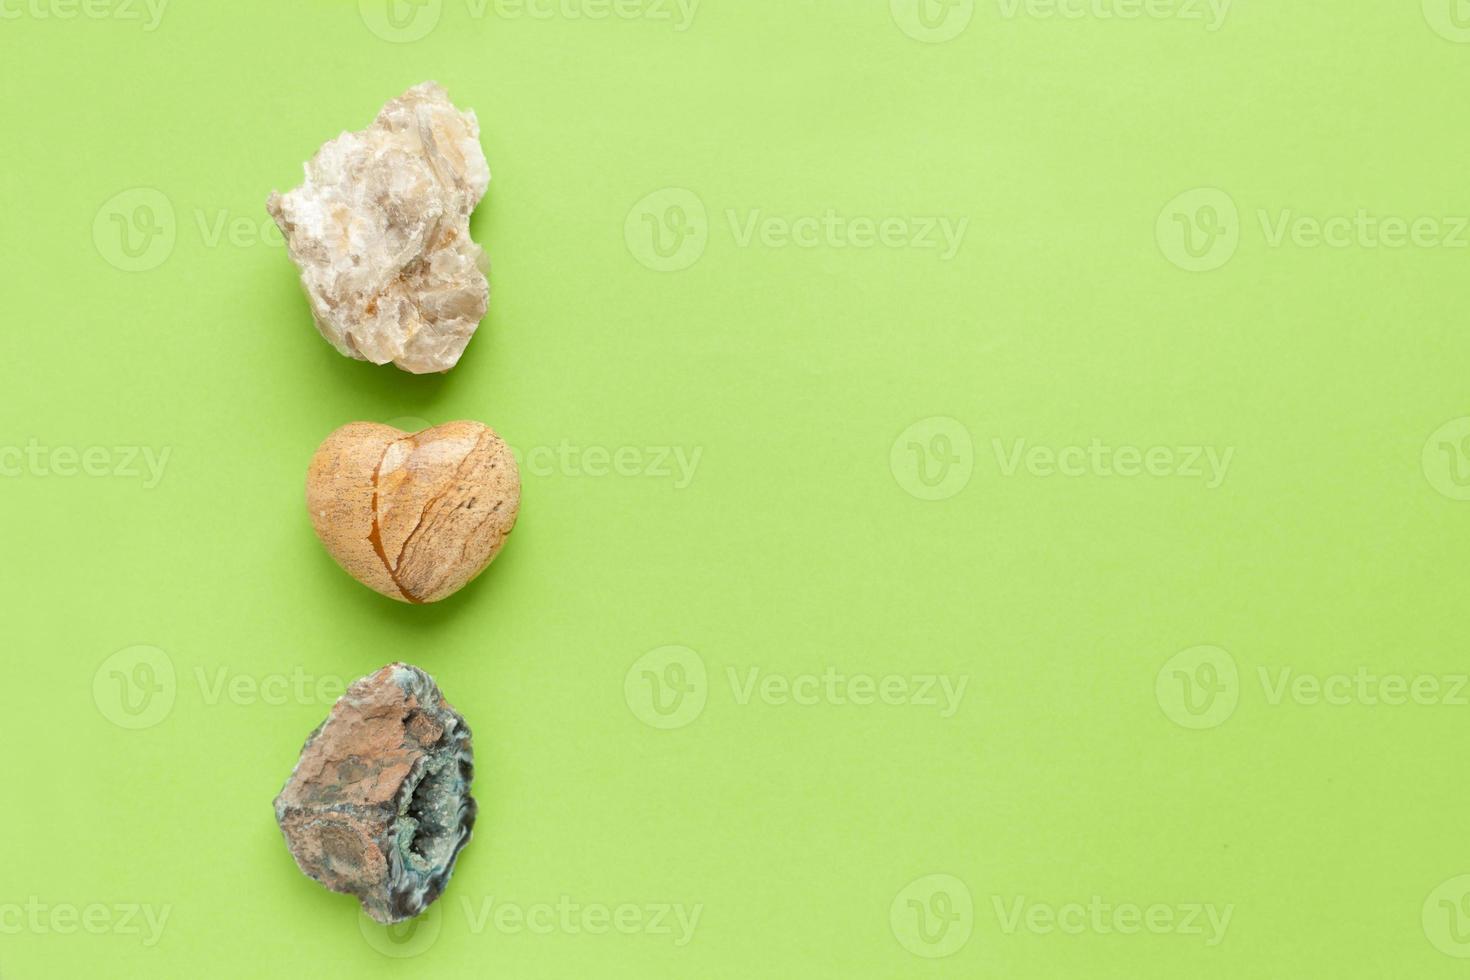 fondos y texturas, concepto de naturaleza - rocas y minerales. diferentes minerales y piedra de corazón sobre fondo verde. foto